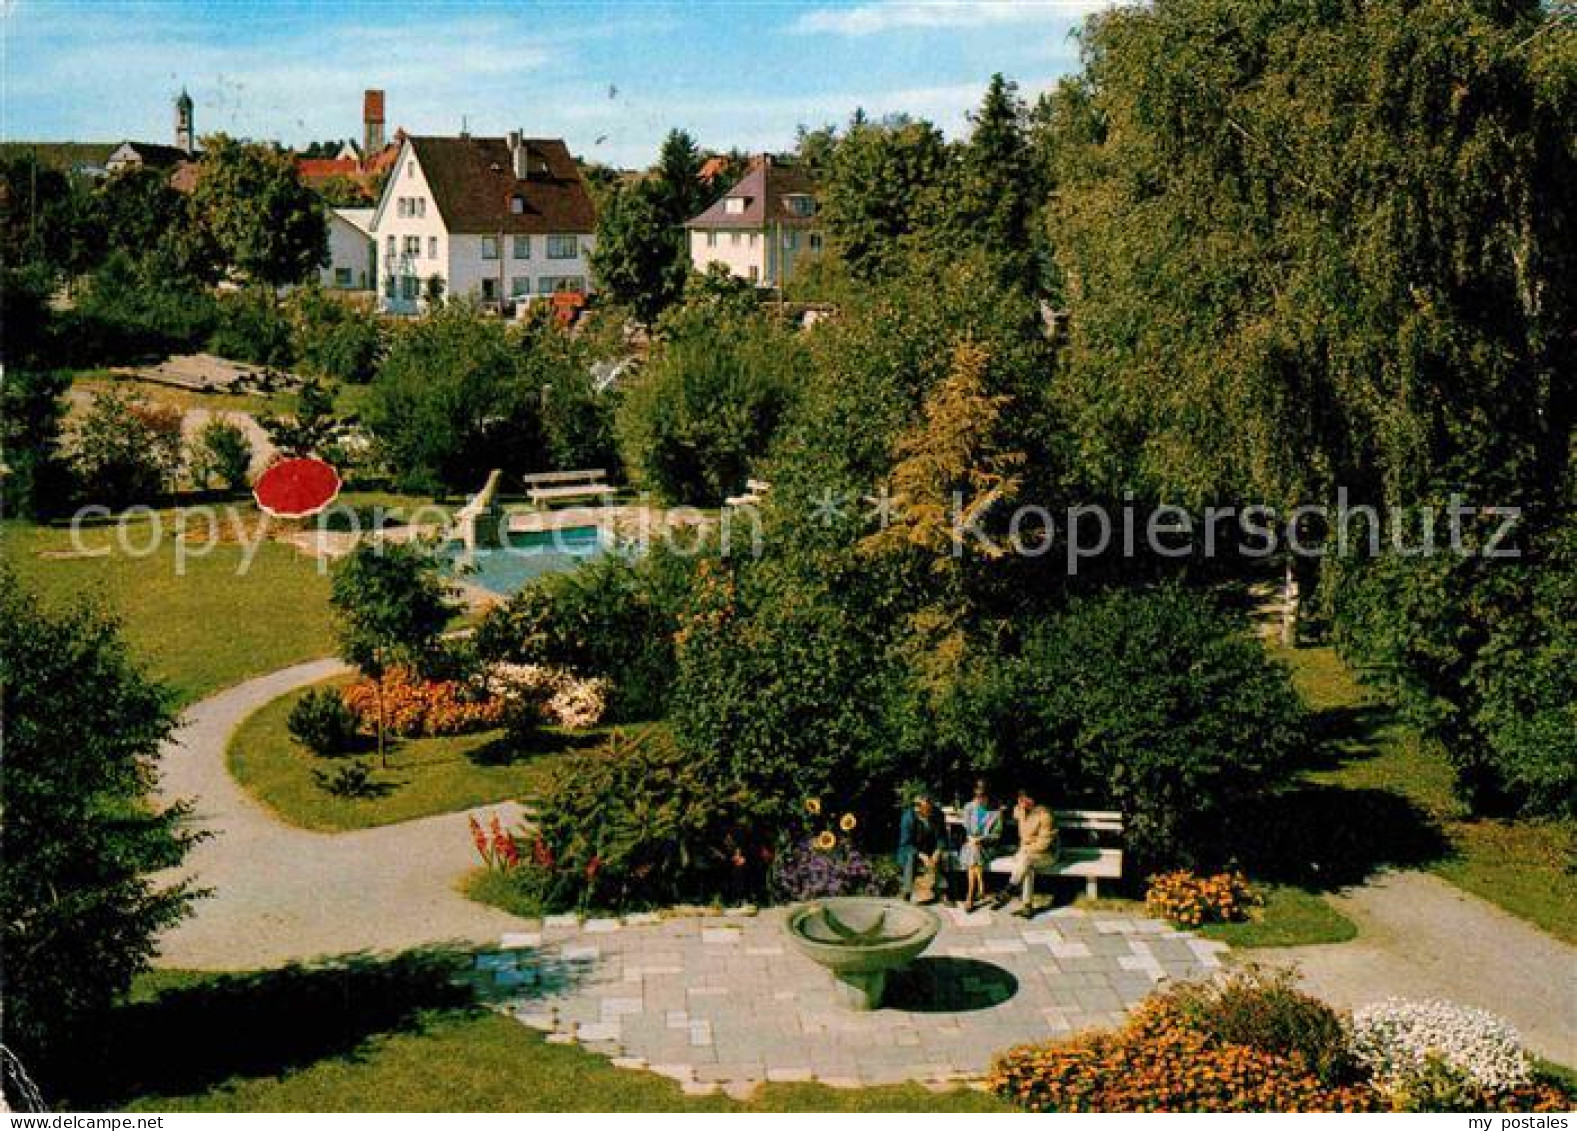 72847669 Woerishofen Bad Park An Kaufbeurer Strasse Mit Klosterkirche Bad Woeris - Bad Wörishofen